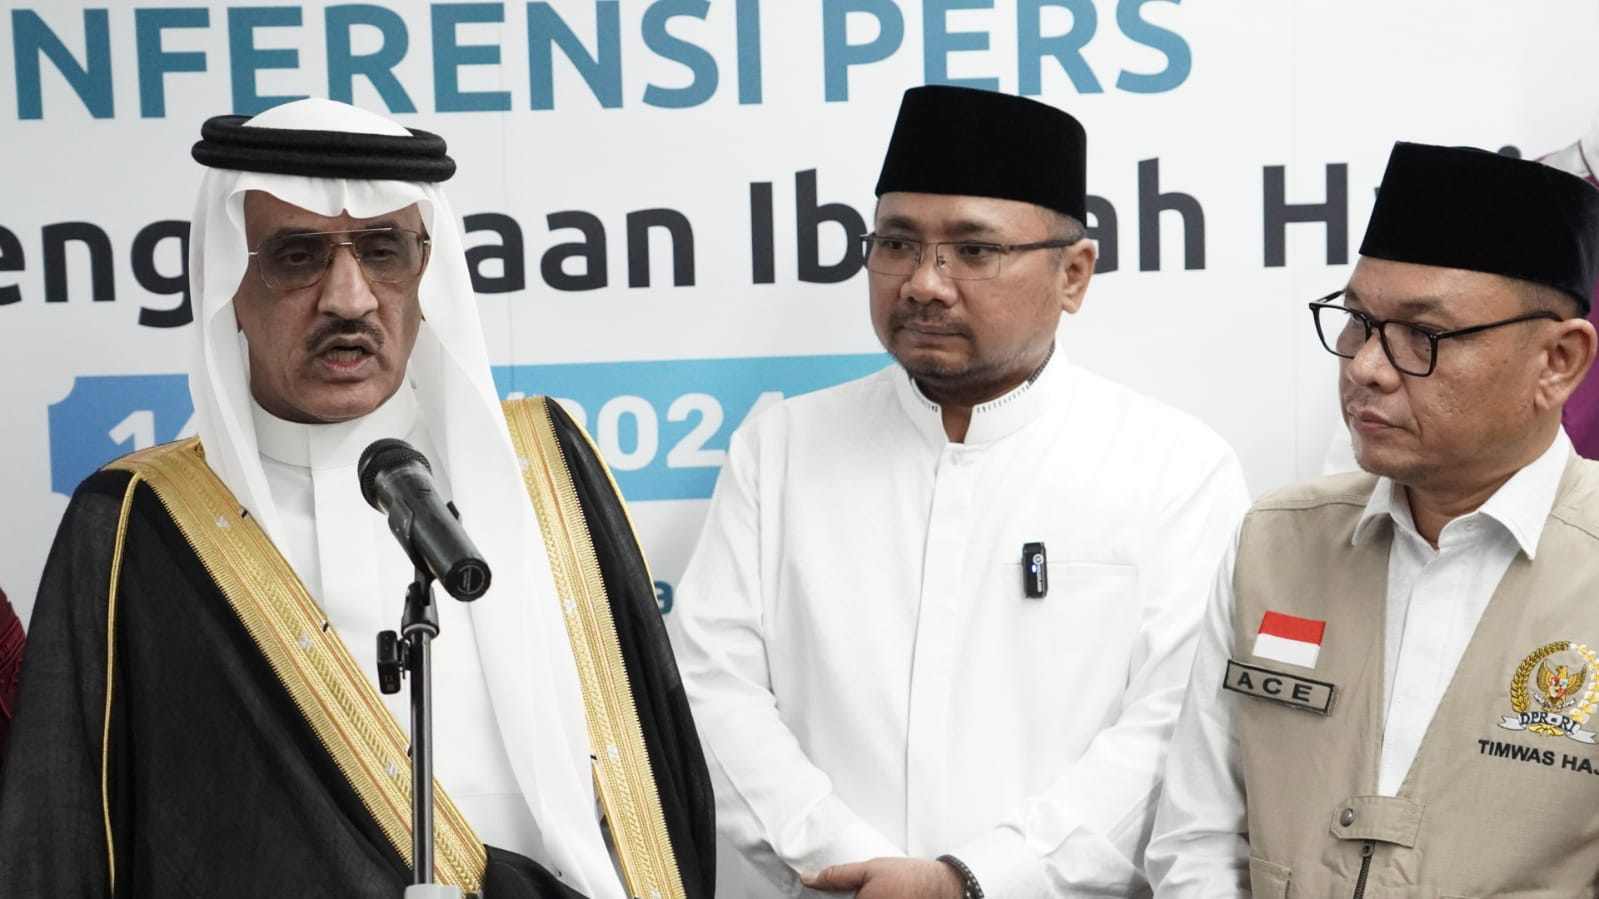 Layanan Fast Track untuk Jemaah Haji Indonesia, Tak Perlu Lagi Pemeriksaan Imigrasi di Arab Saudi